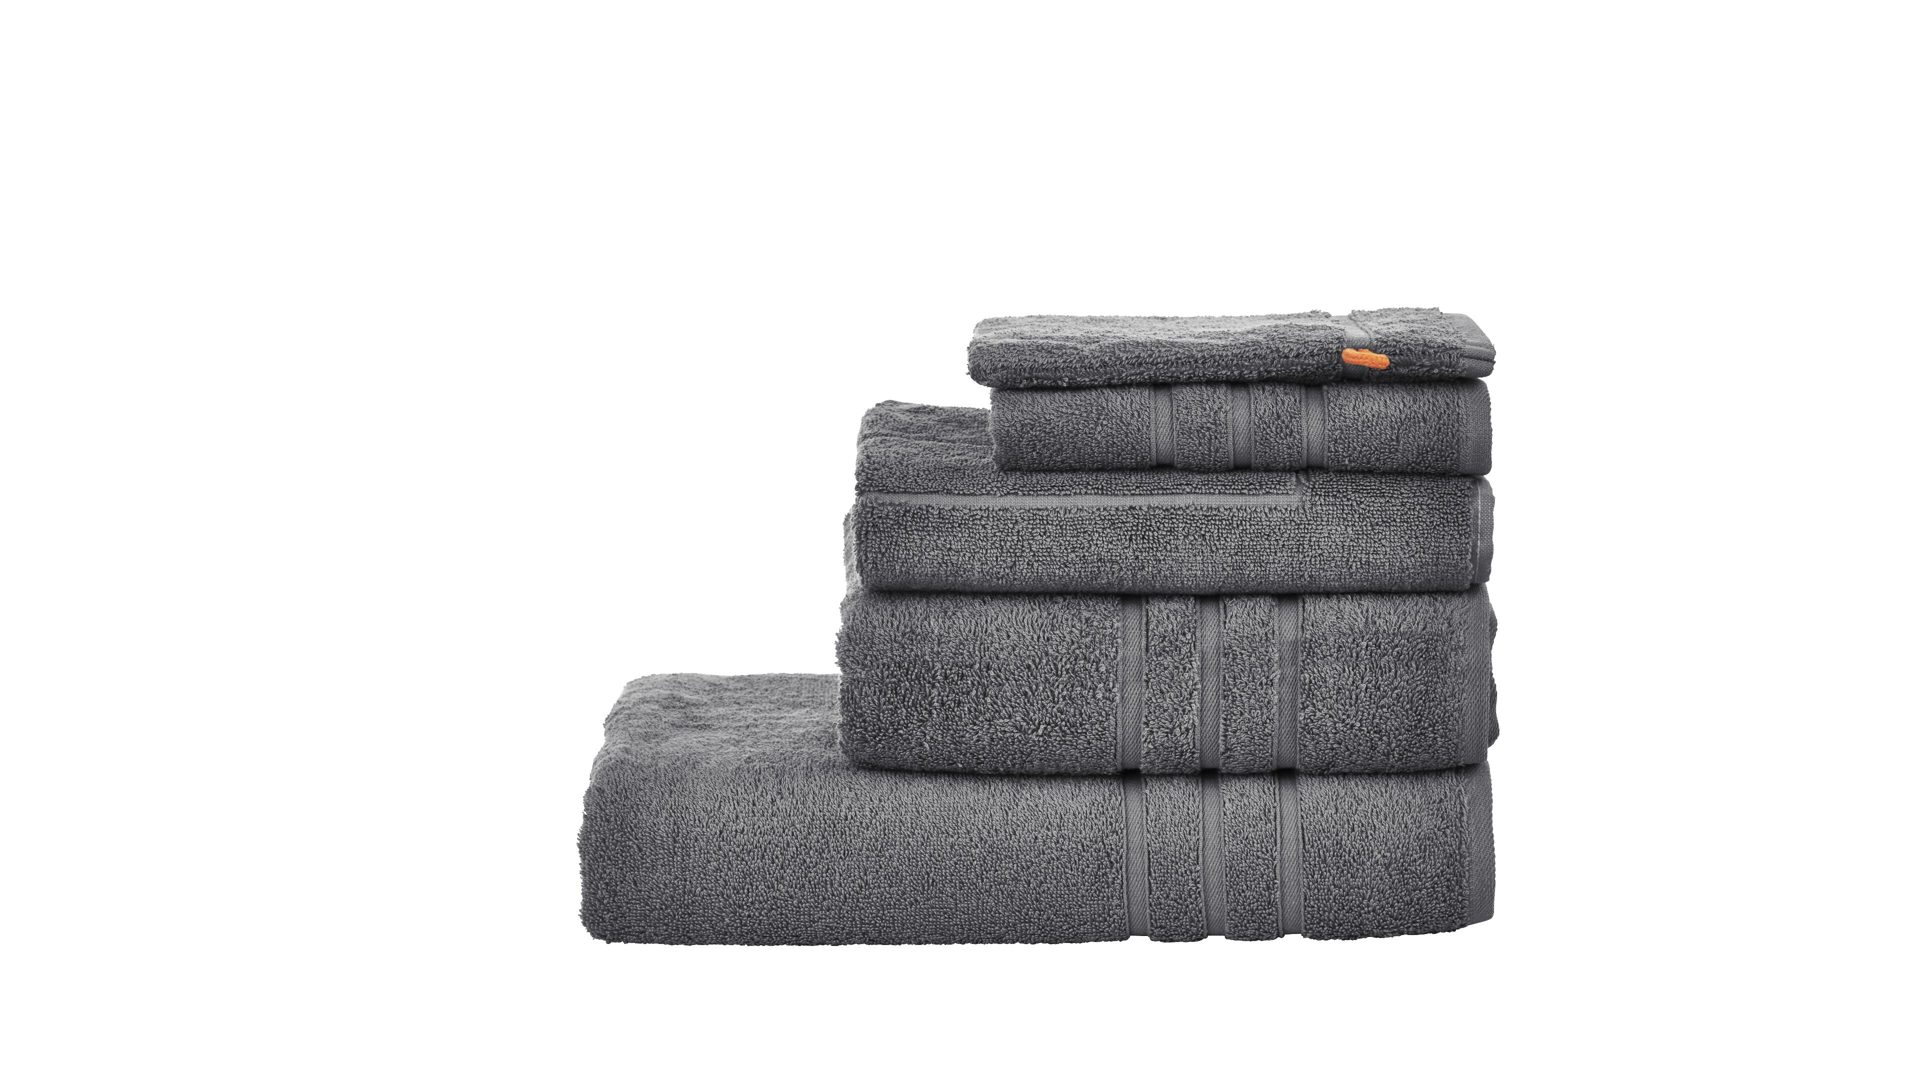 Handtuch-Set Done by karabel home company aus Stoff in Schwarz Done Handtuch-Set Daily Uni anthrazitfarbene Baumwolle – fünfteilig